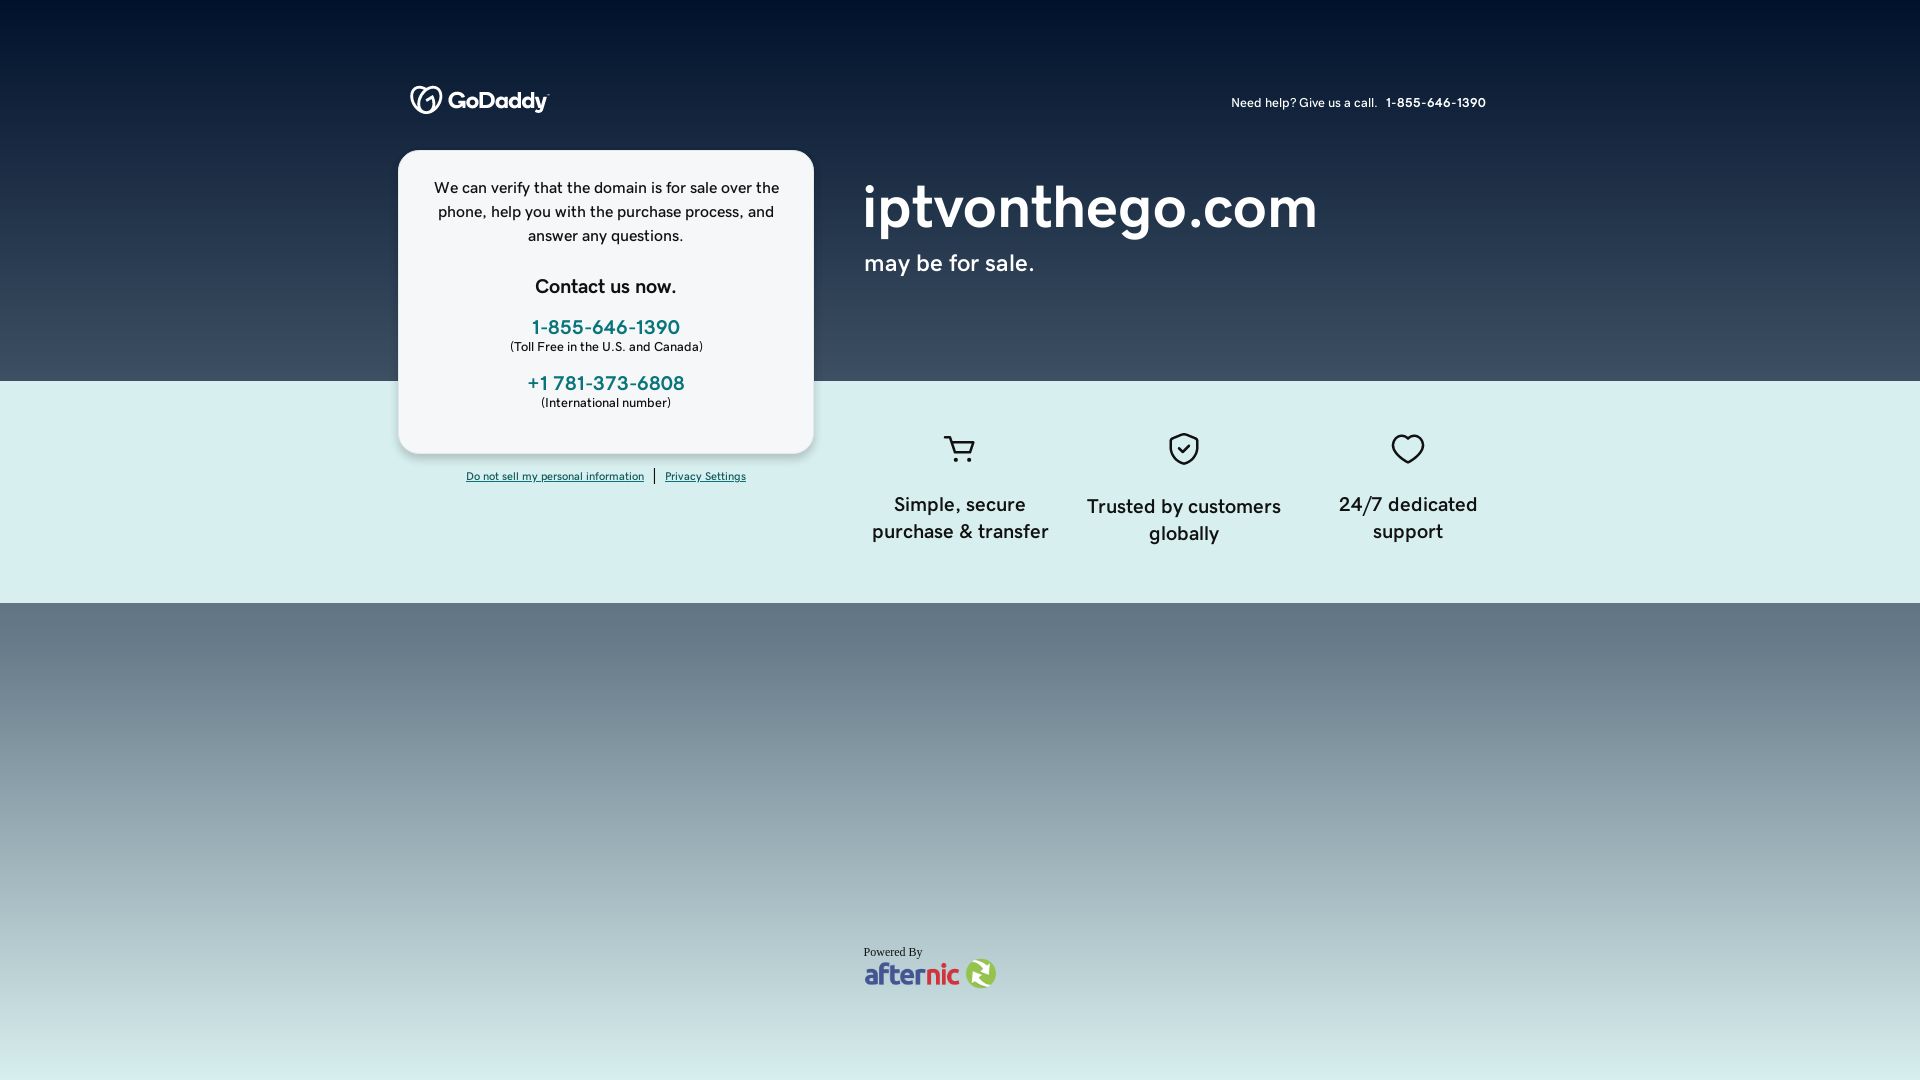 État du site web tv.iptvonthego.com est   EN LIGNE